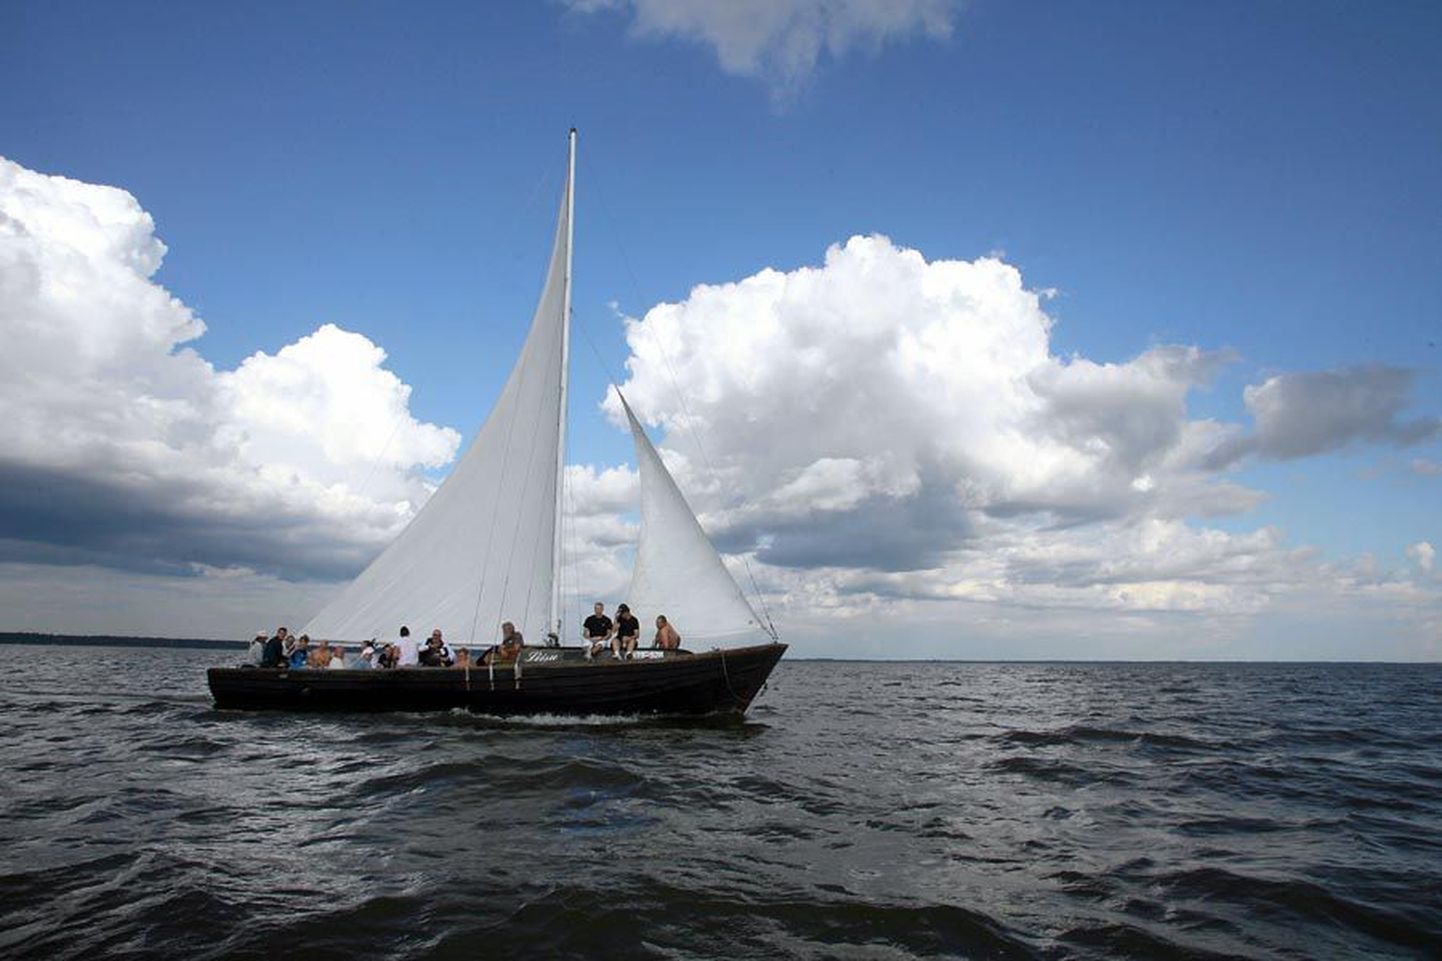 Valmat kodusadamaks pidav purjekas Liisu on juba aastaid lustijaid sõidutades Võrtsjärve laineid kündnud.